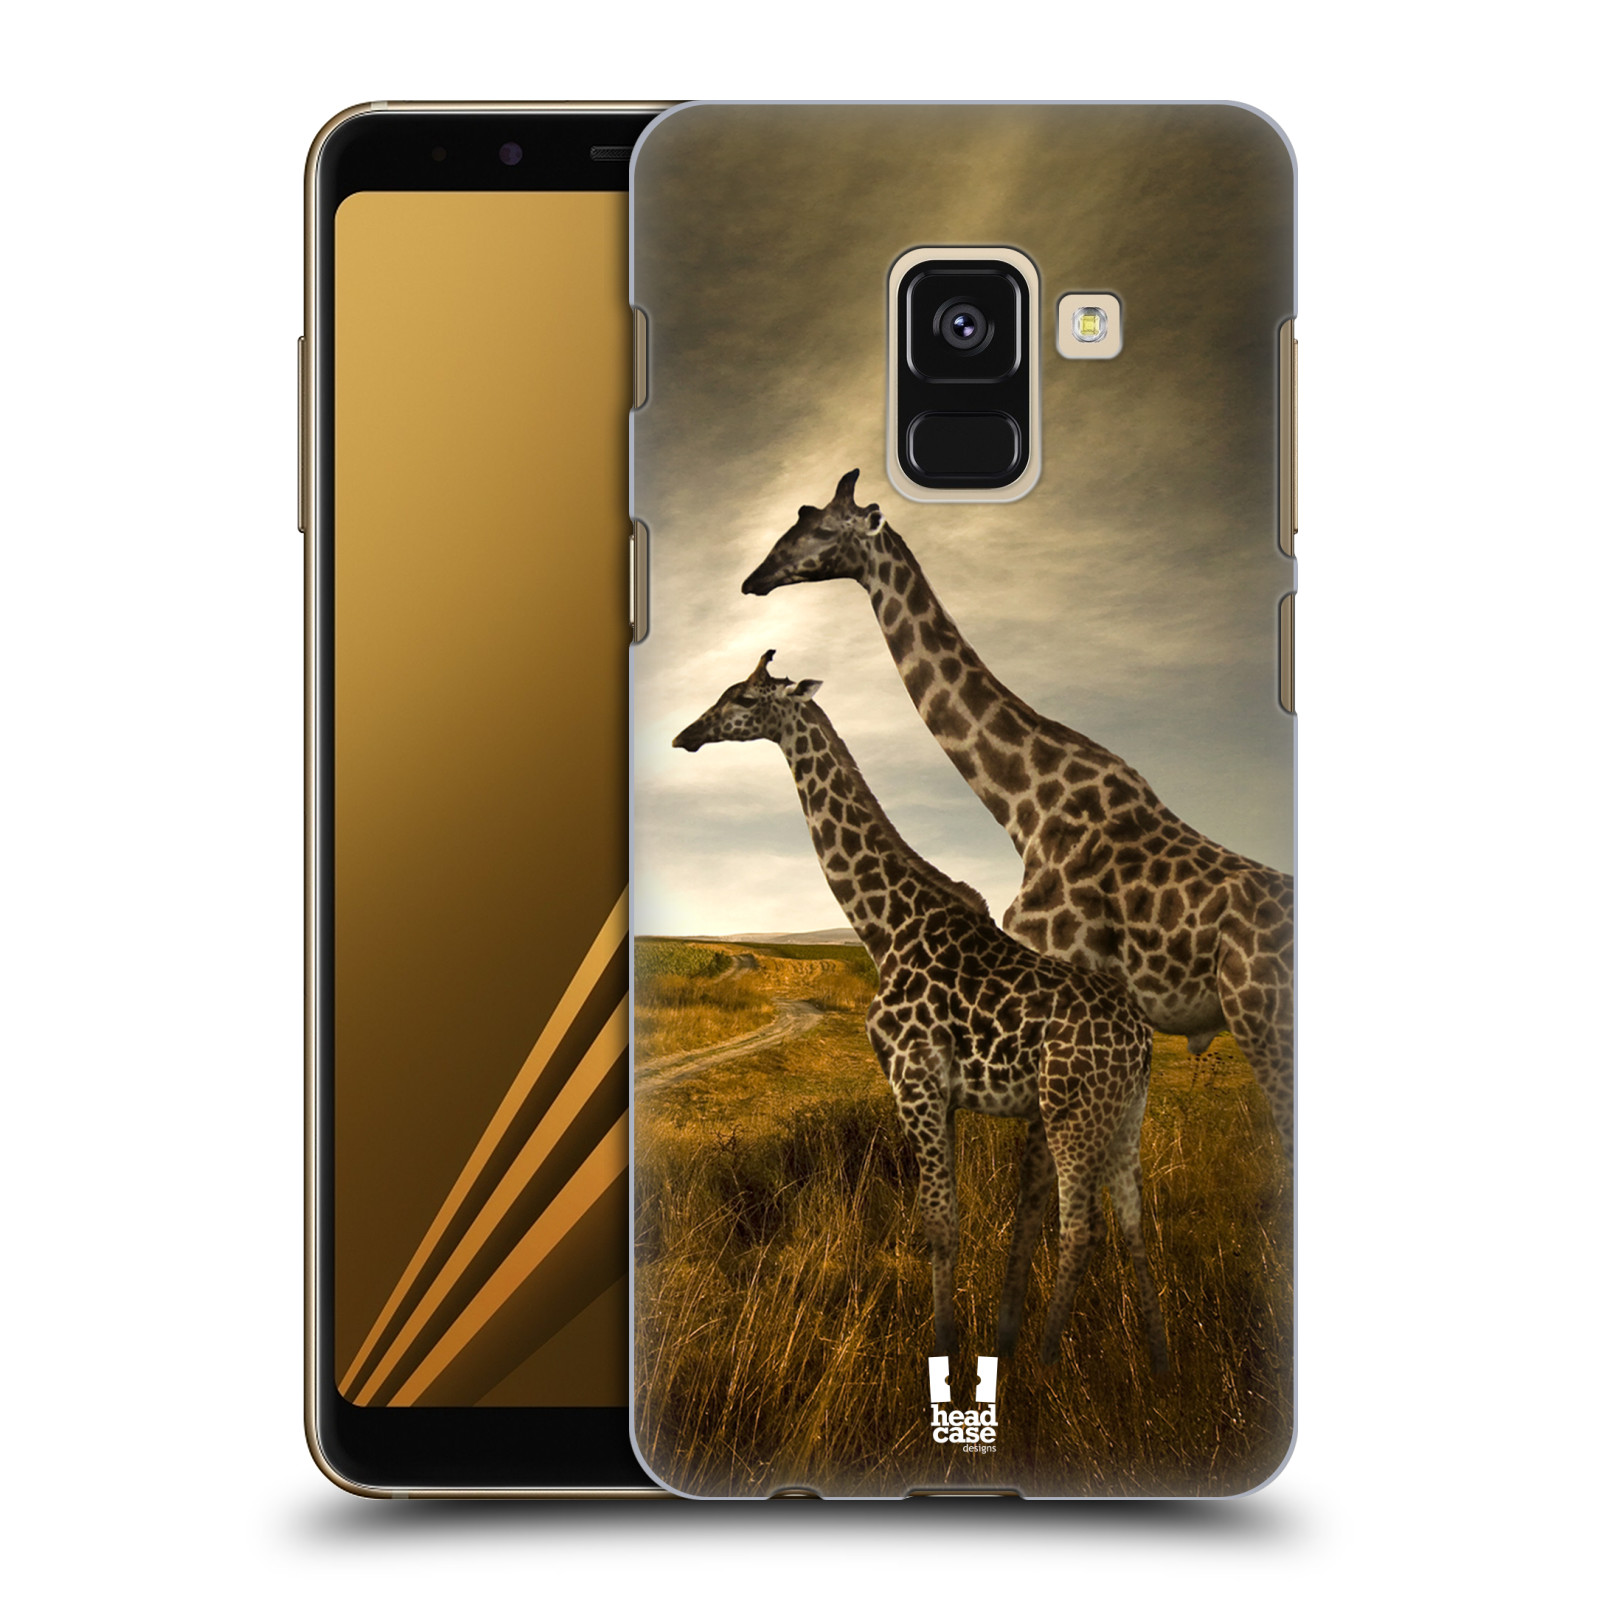 Zadní obal pro mobil Samsung Galaxy A8+ - HEAD CASE - Svět zvířat žirafy